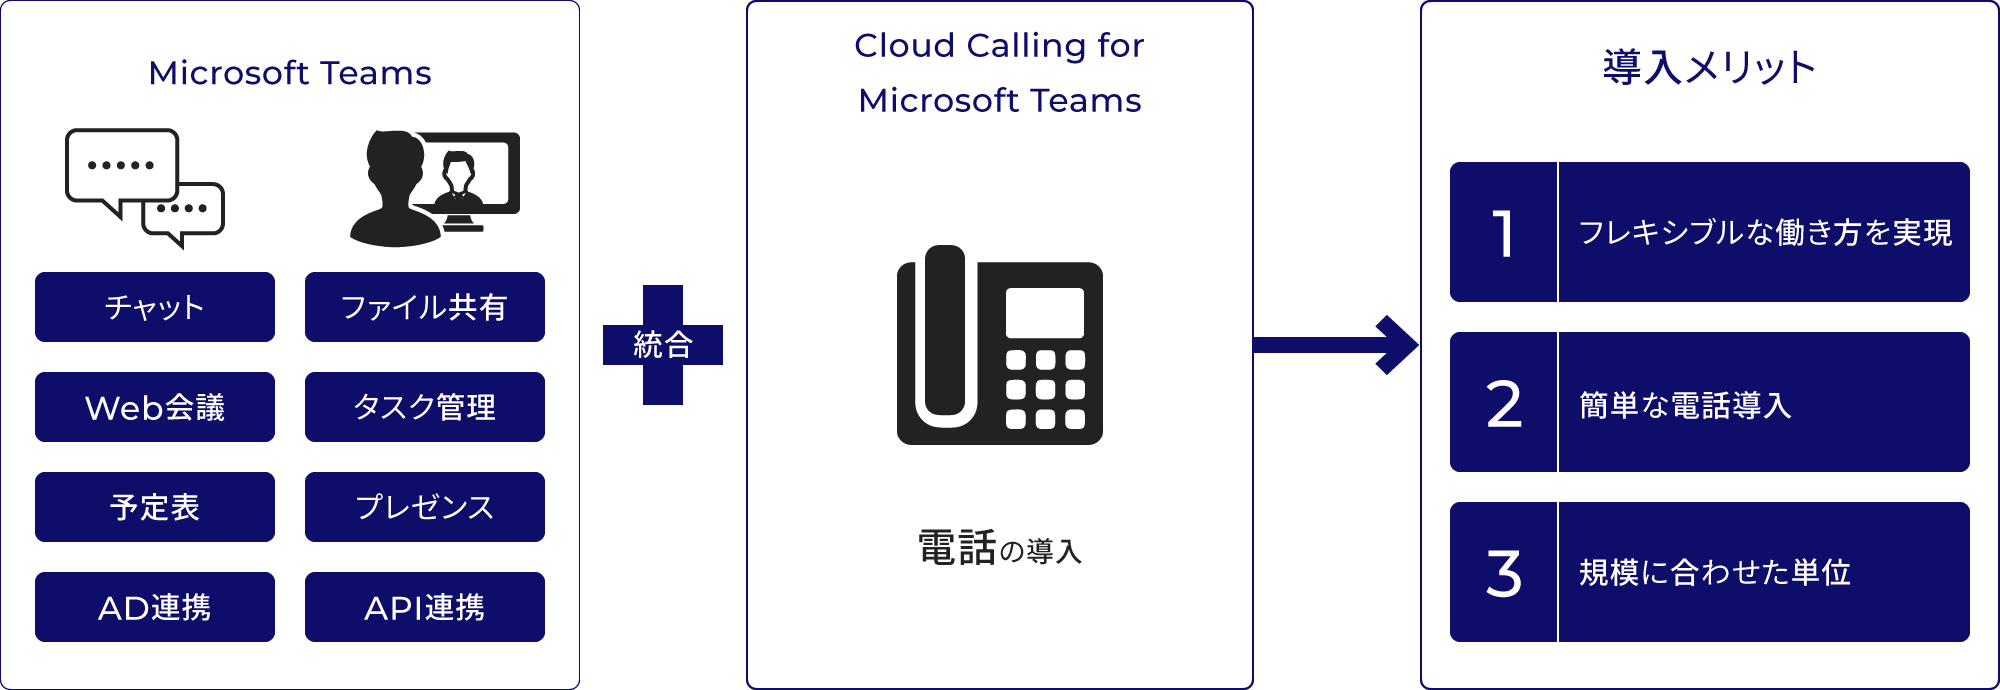 Microsoft TeamsにCloud Calling for Microsoft Teamsを統合、電話の導入により、1.フレキシブルな働き方を実現、2.簡単な電話導入、3.規則に合わせた単位、の導入メリットがある